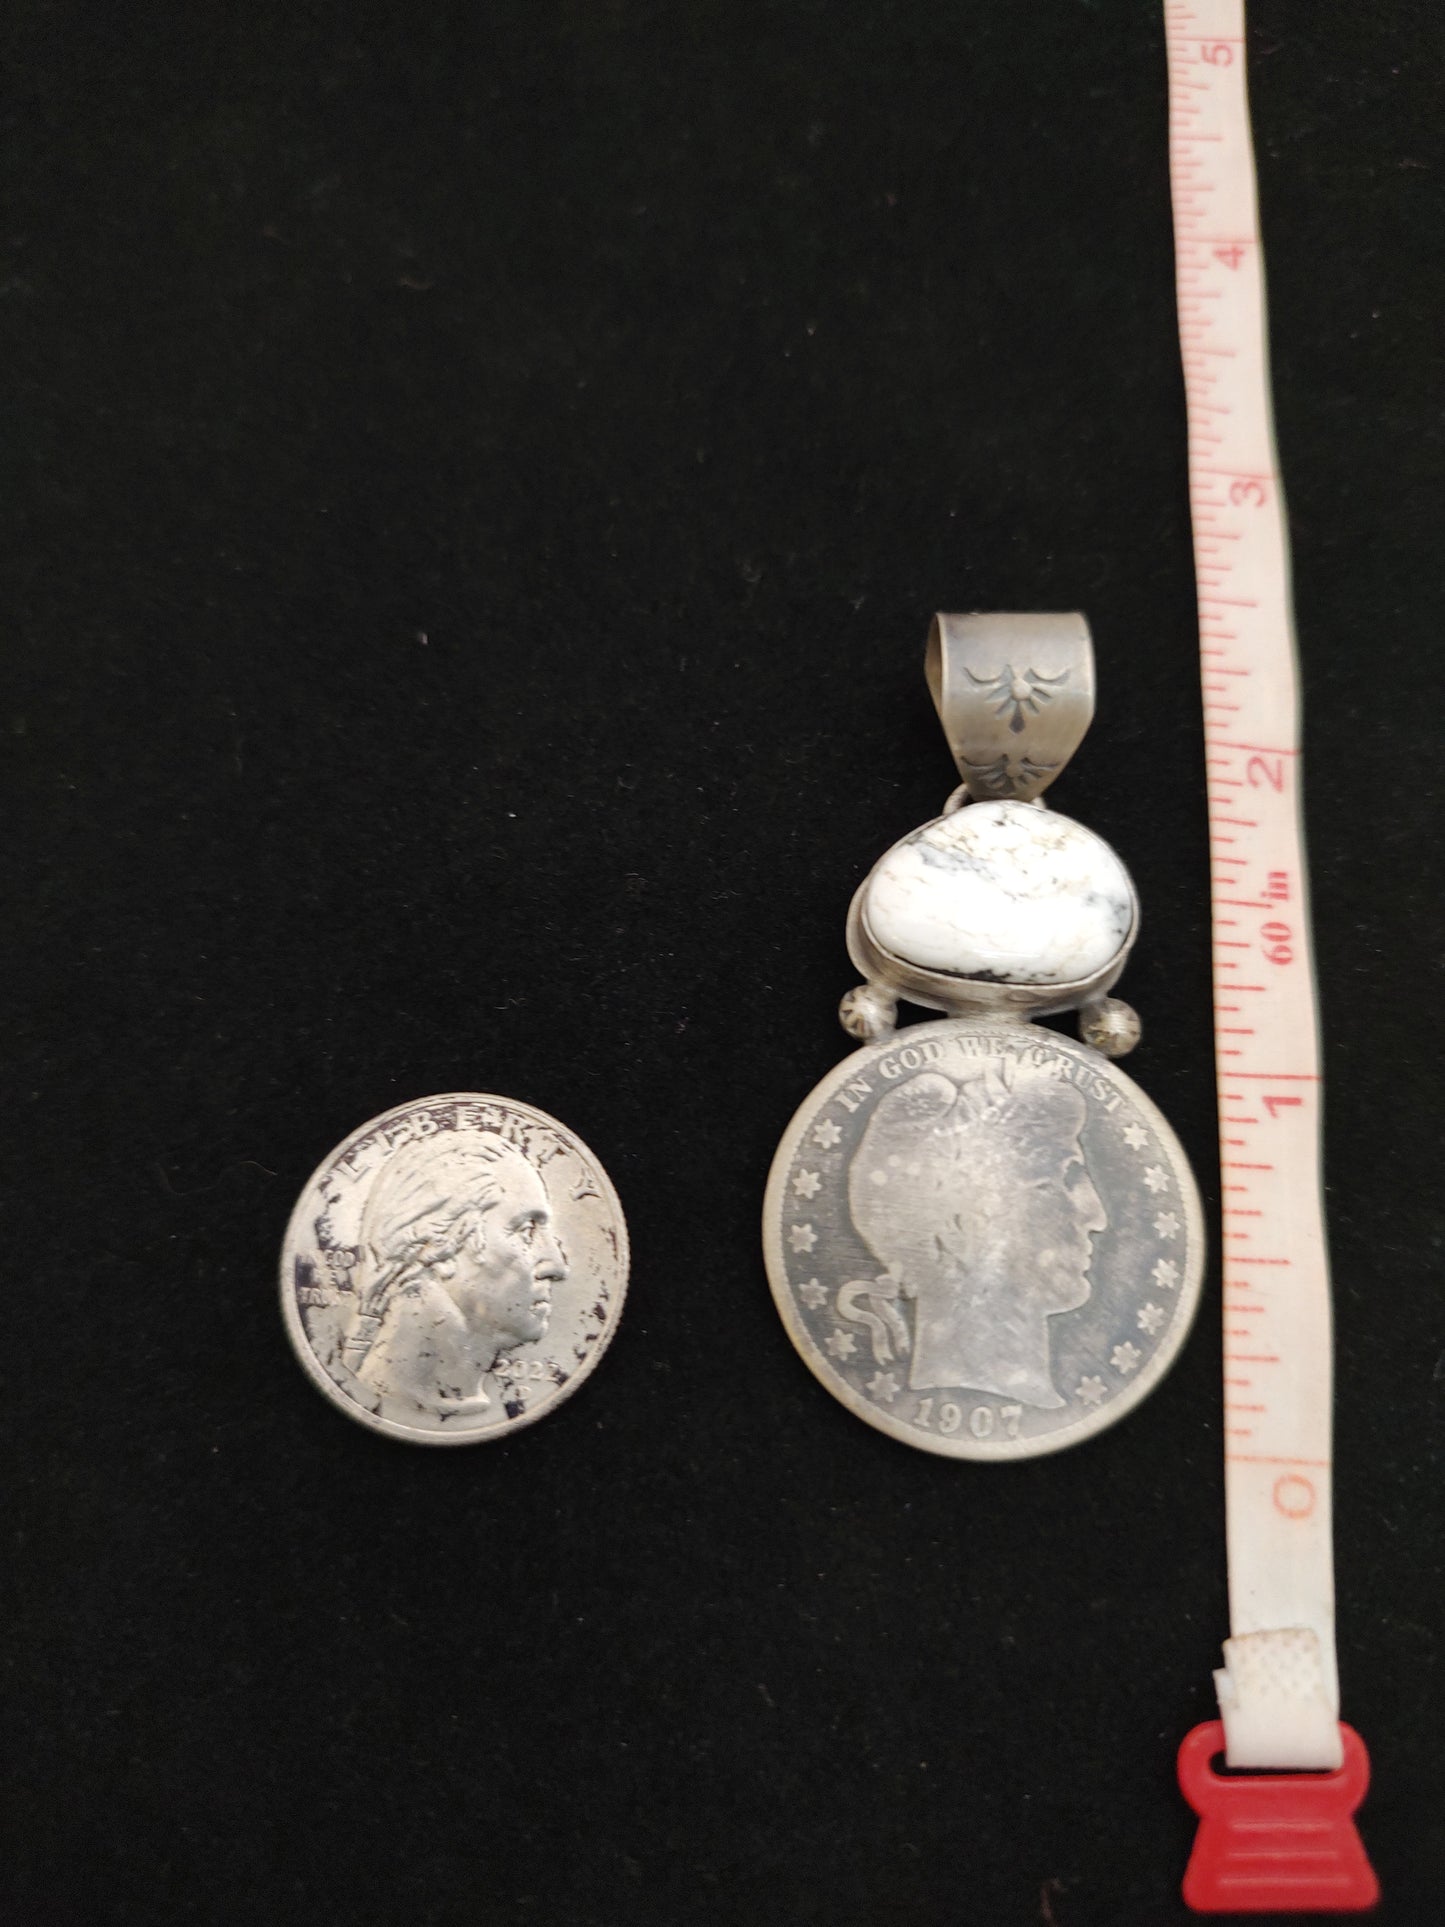 1907 Half Dollar Coin with White Buffalo Pendant